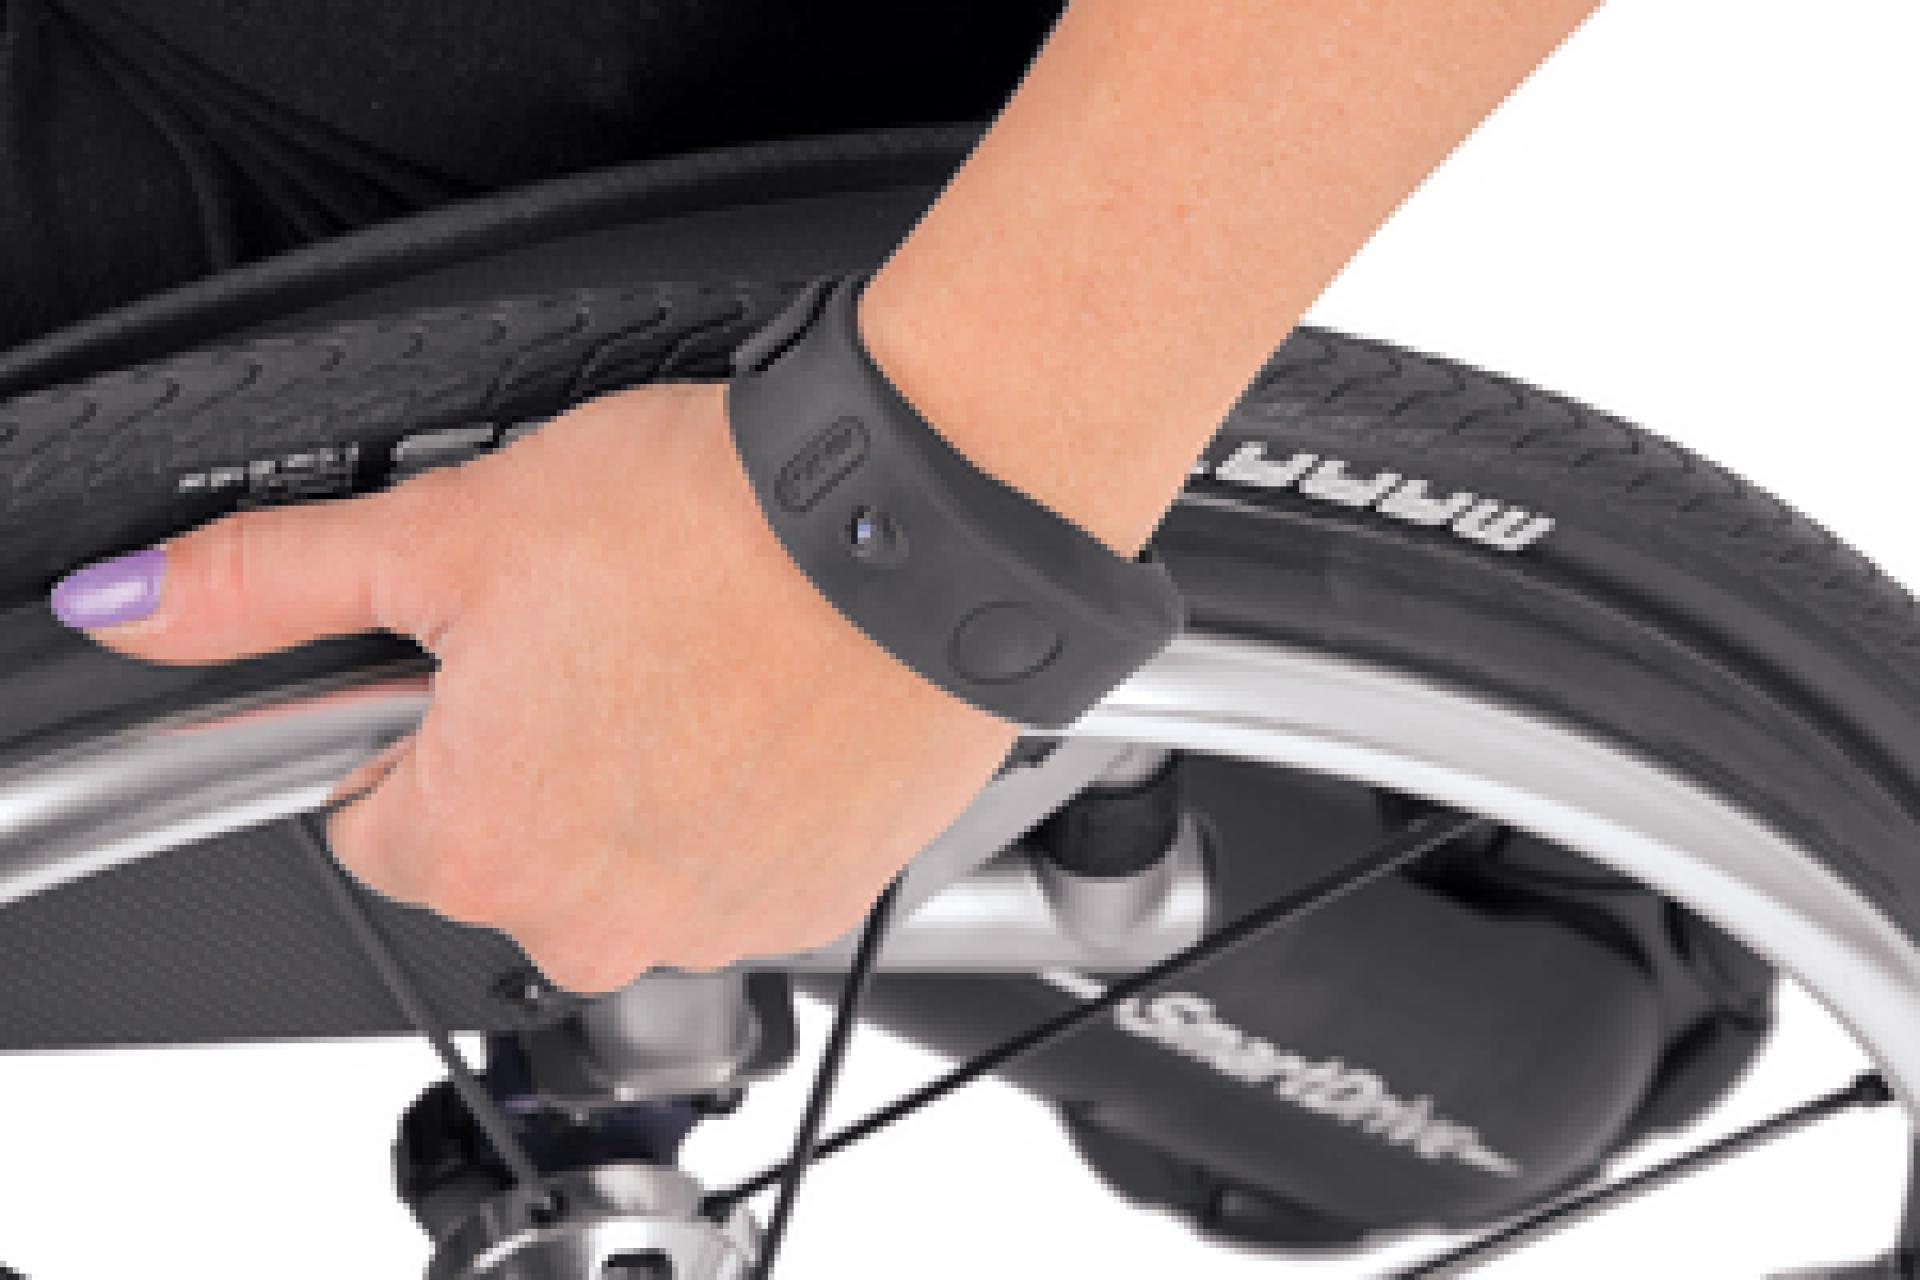 Elektrische rolstoelaandrijving smartdrive van max mobility via double performance qPLKoSp